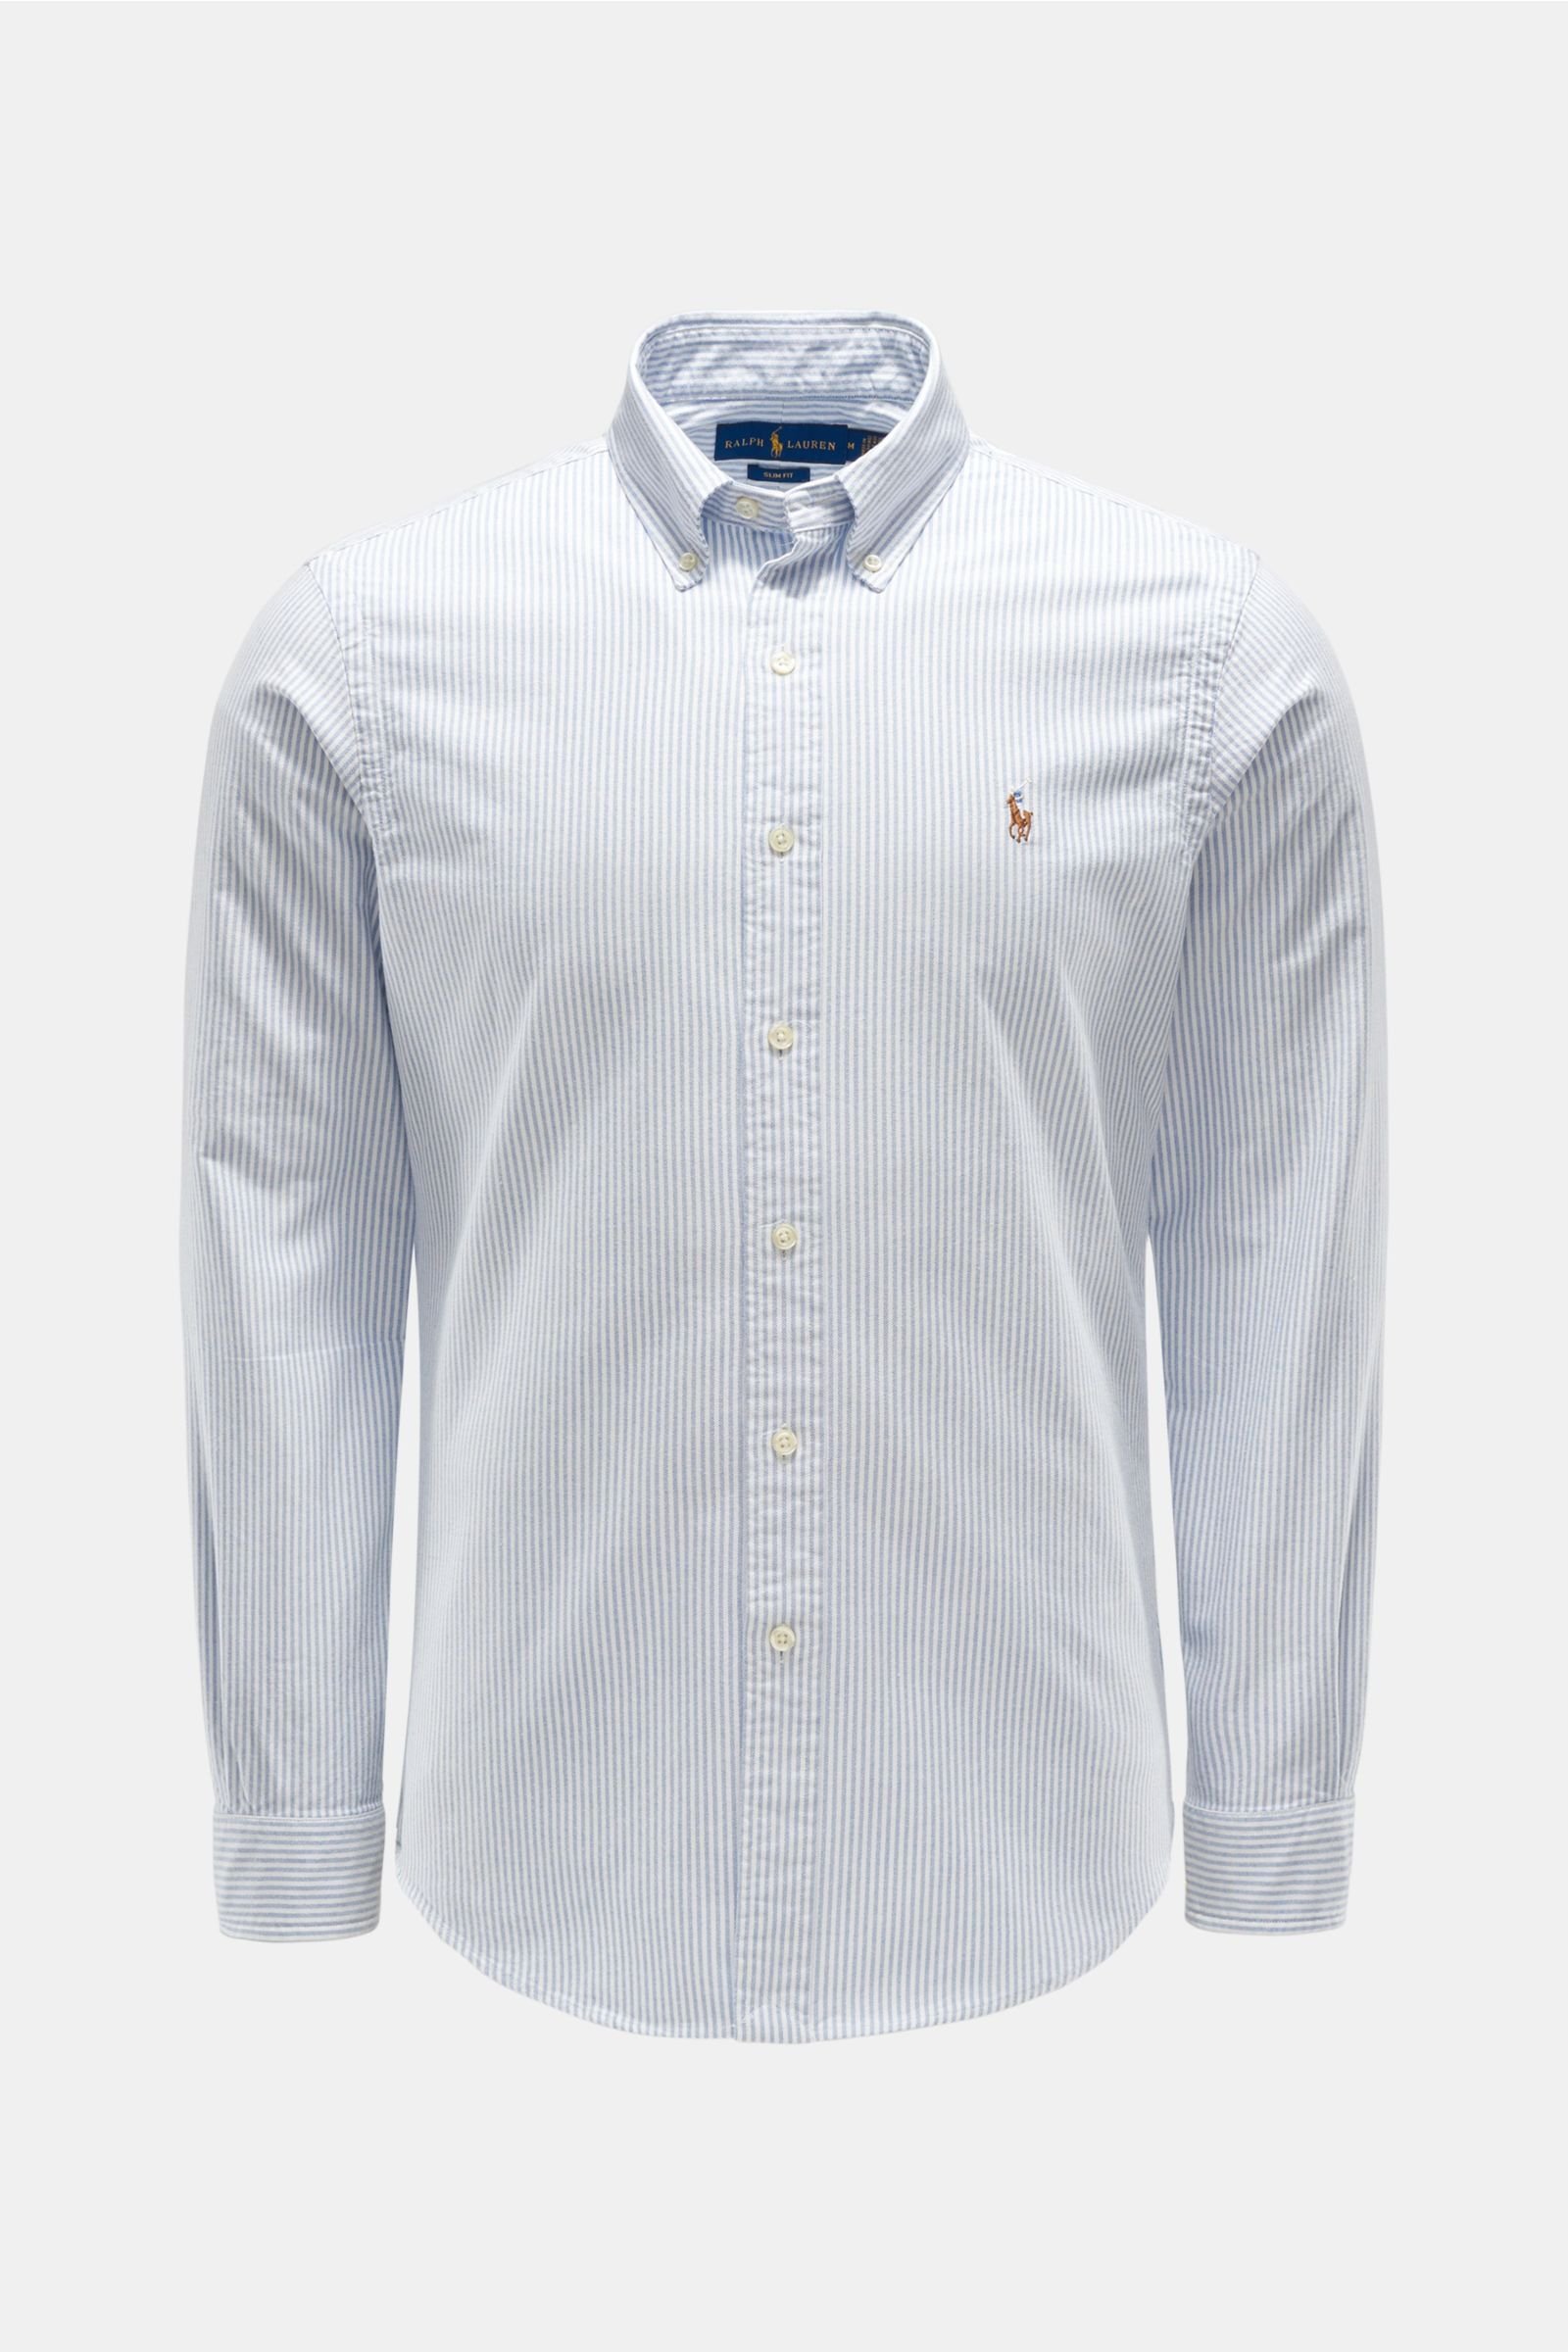 Oxfordhemd Button-Down-Kragen hellblau/weiß gestreift